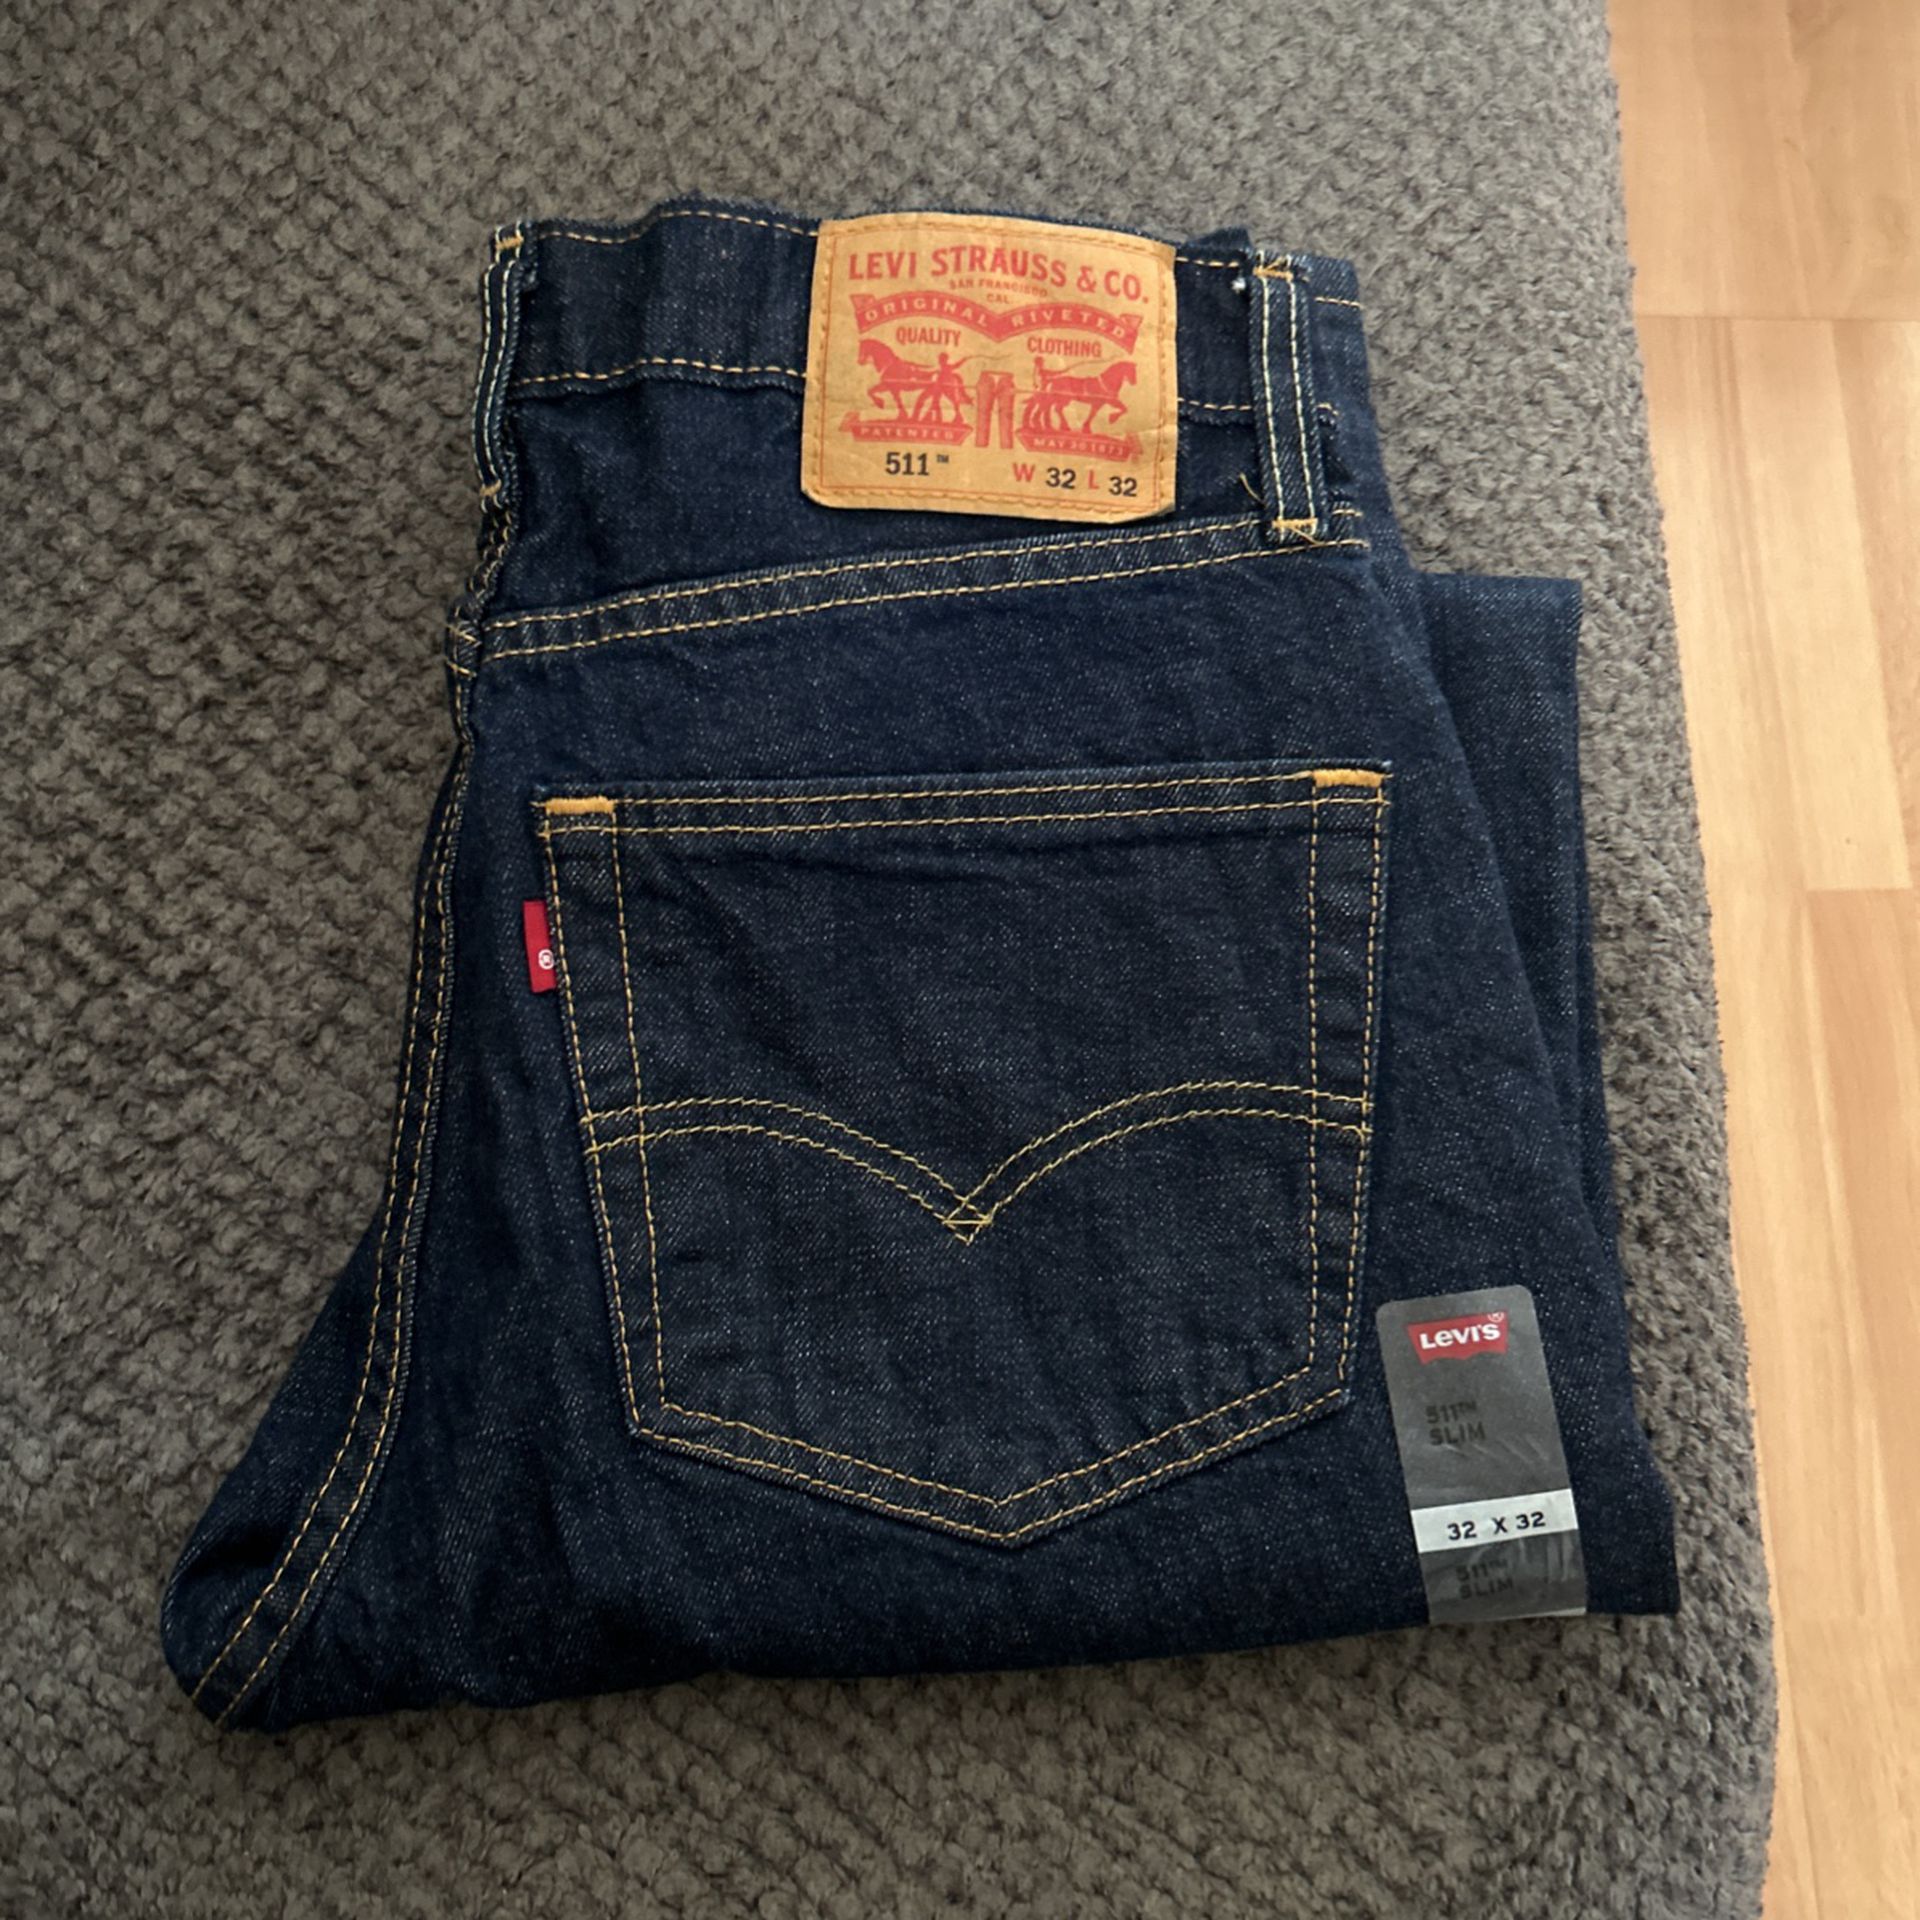 511 Levi Jeans . size 32x32